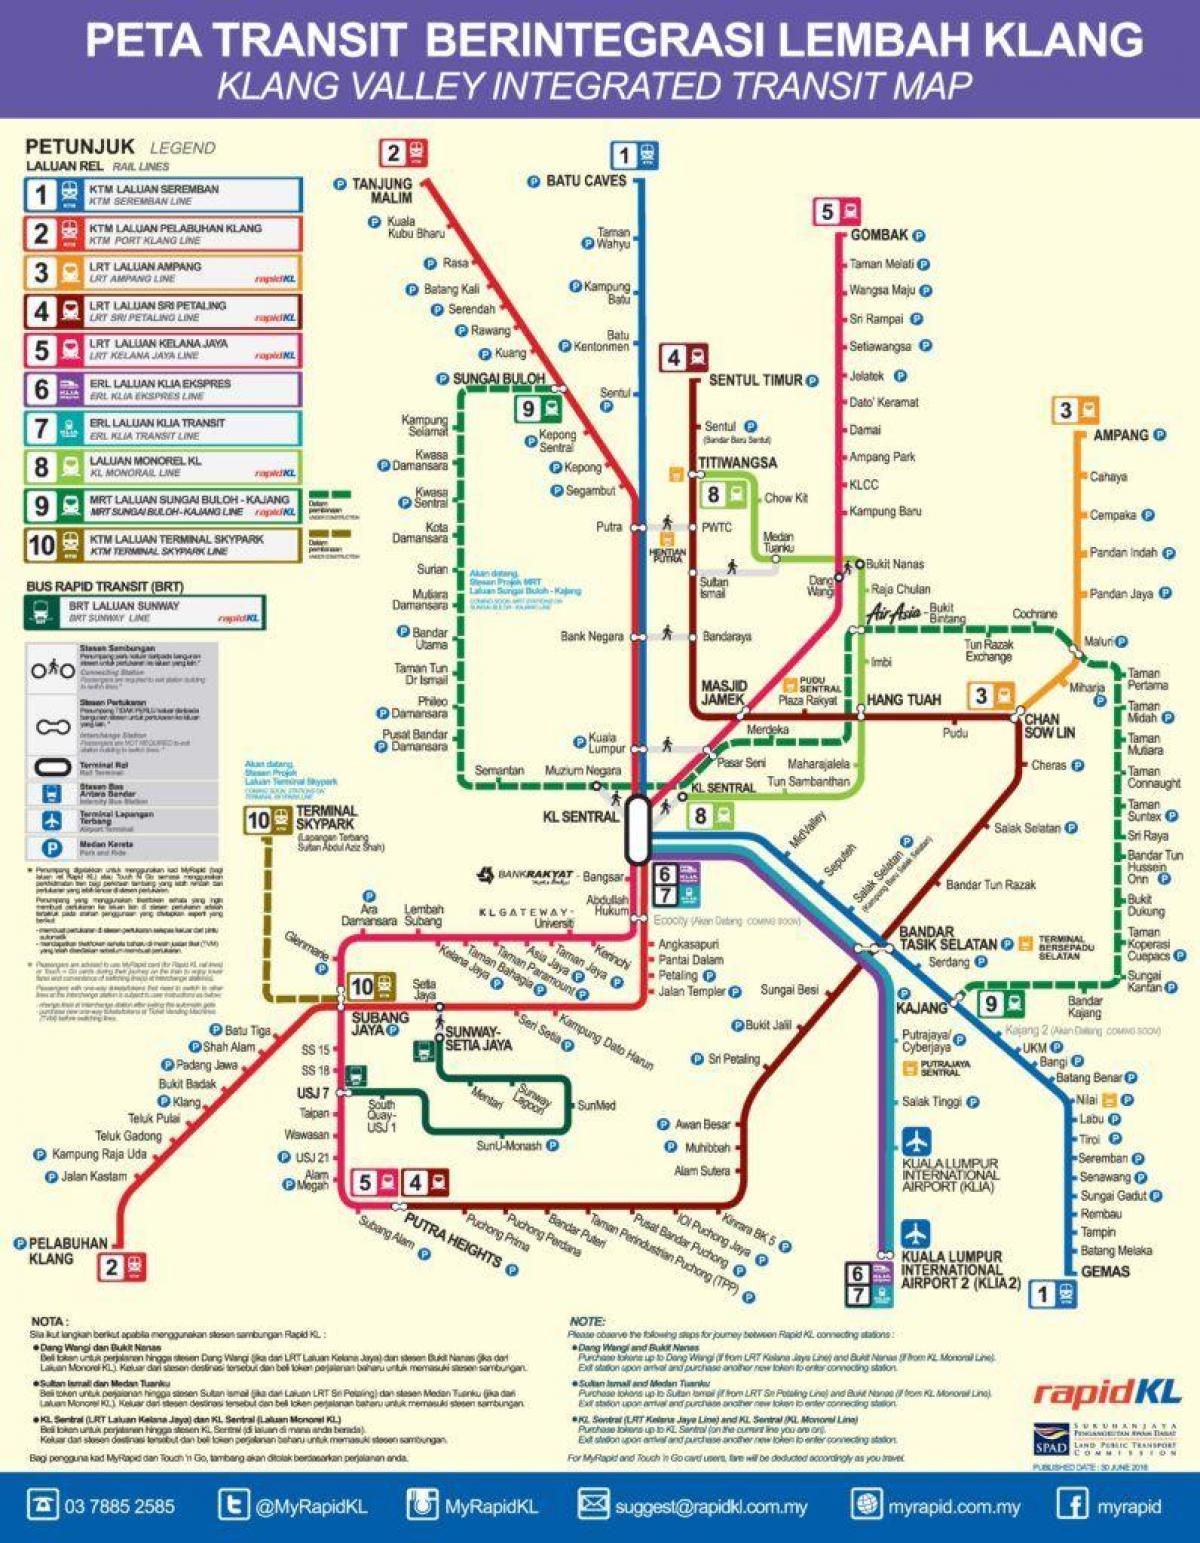 klang valley železniční tranzitní mapa